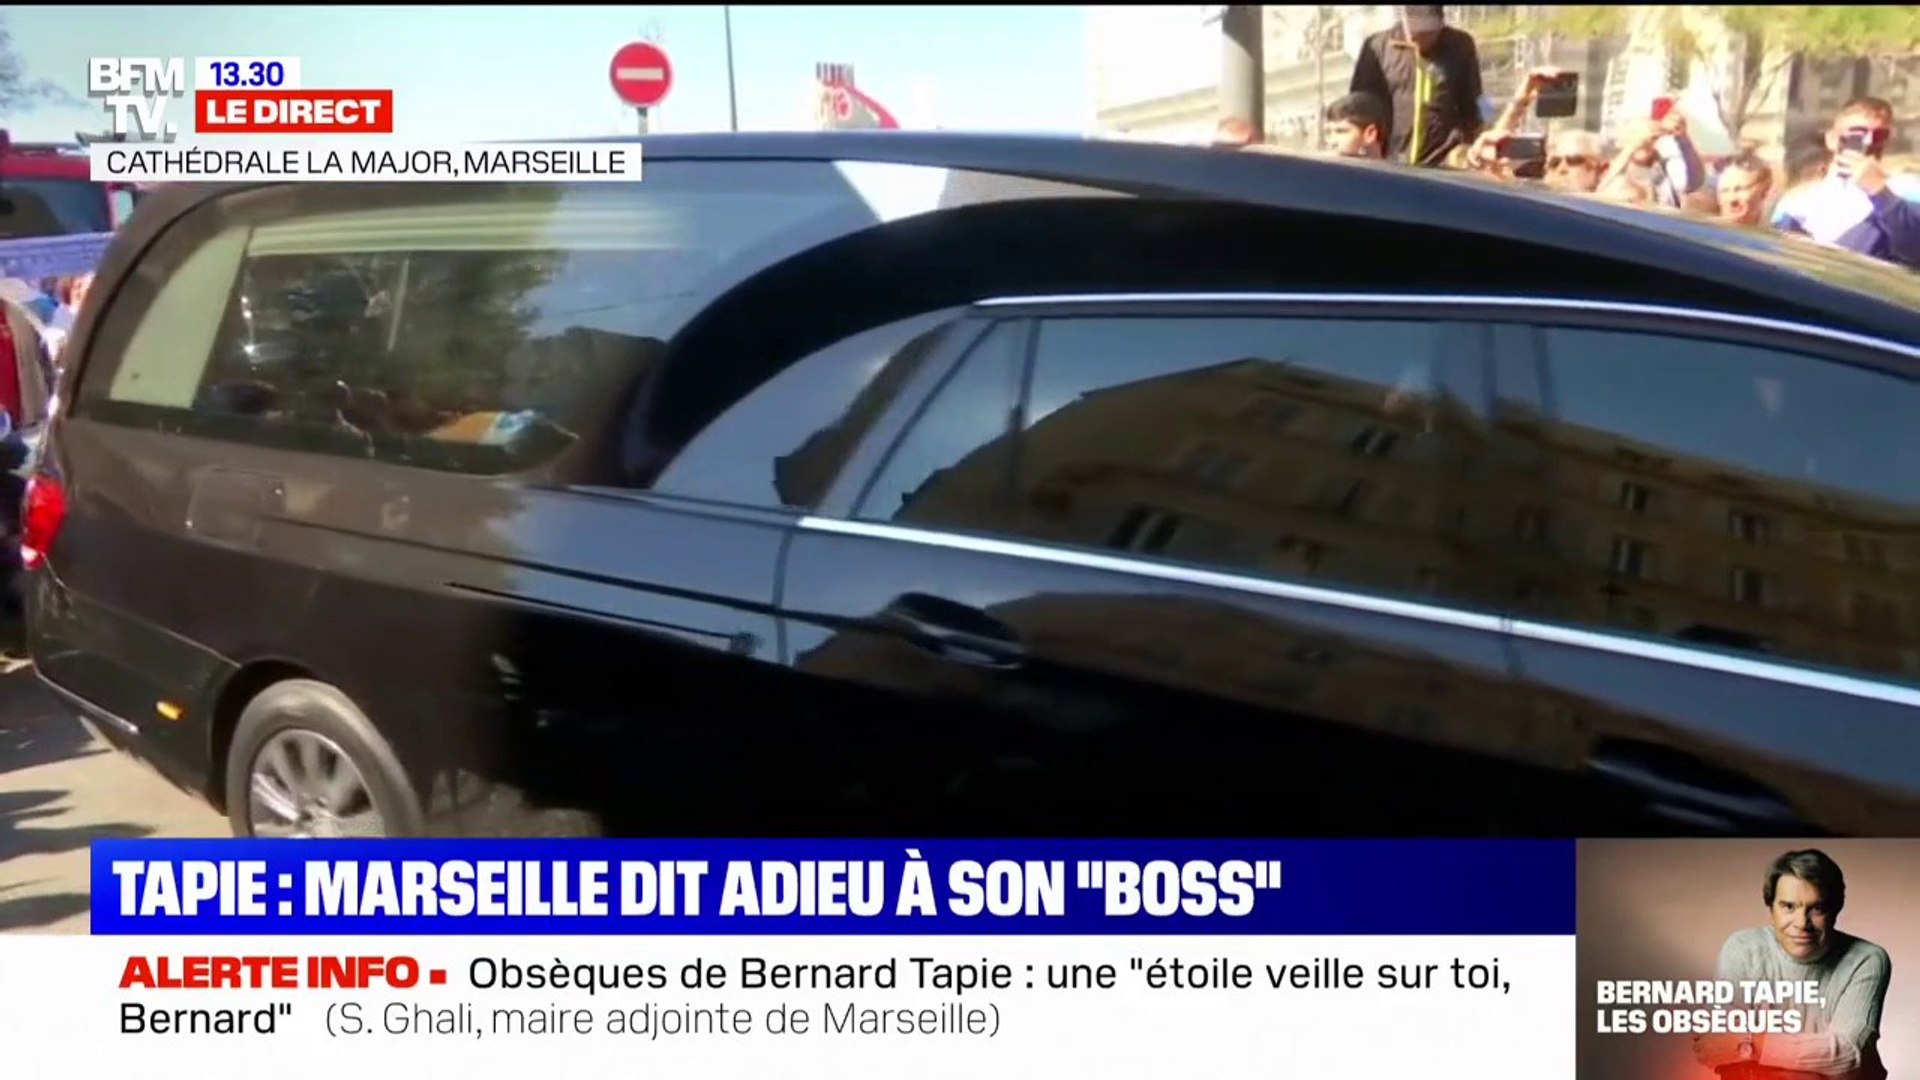 Obsèques de Bernard Tapie: le corbillard s'avance en direction du cimetière  de Mazargues sous l'ovation des supporters - Vidéo Dailymotion